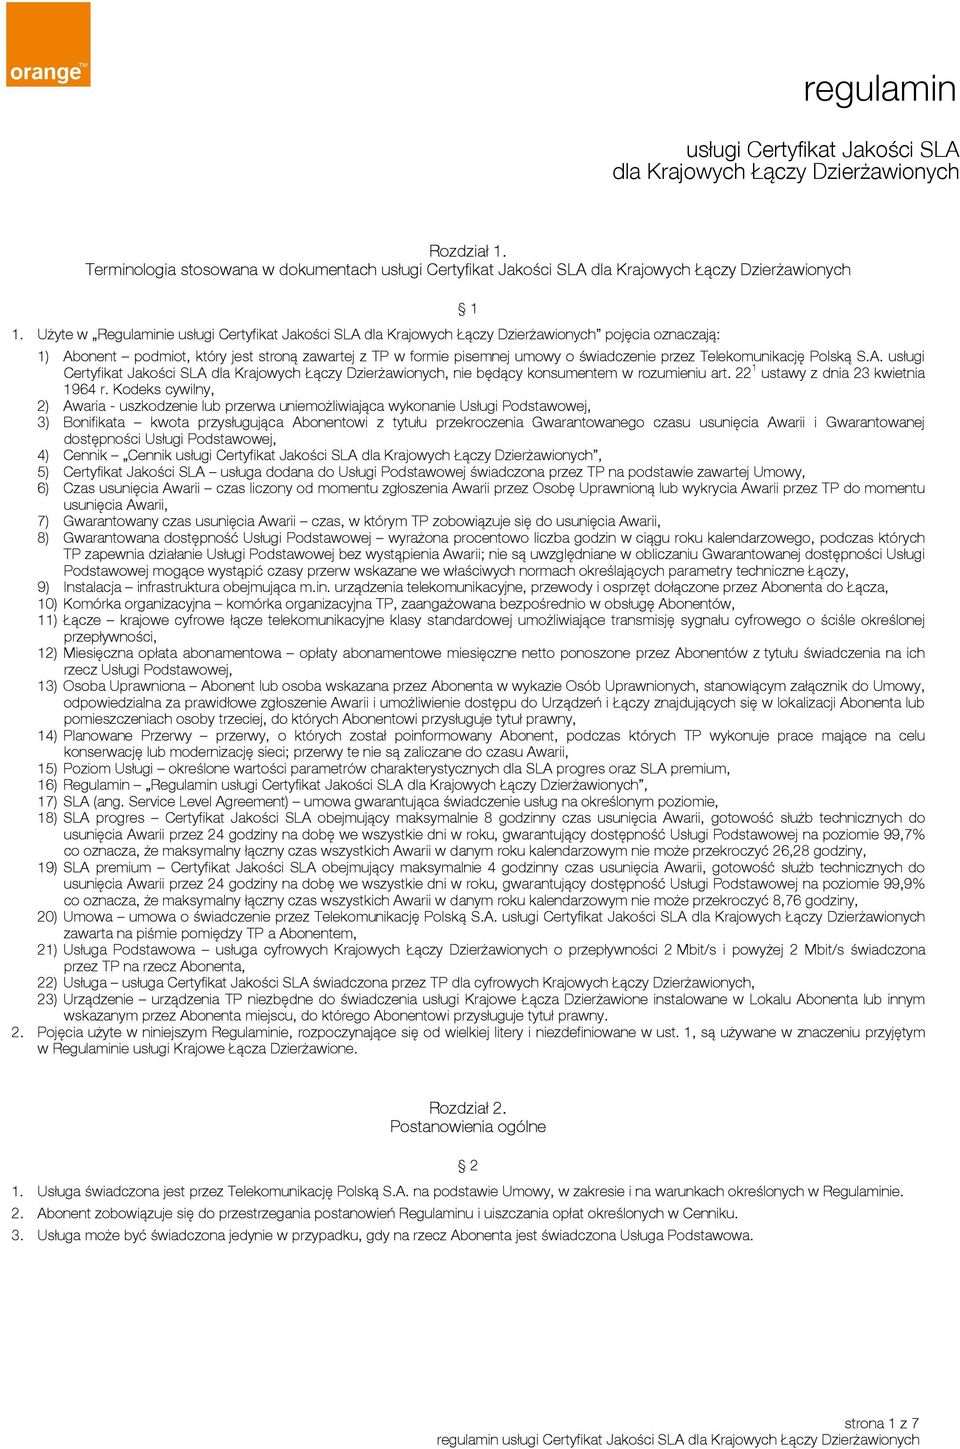 przez Telekomunikację Polską S.A. usługi Certyfikat Jakości SLA dla Krajowych Łączy Dzierżawionych, nie będący konsumentem w rozumieniu art. 22 1 ustawy z dnia 23 kwietnia 1964 r.